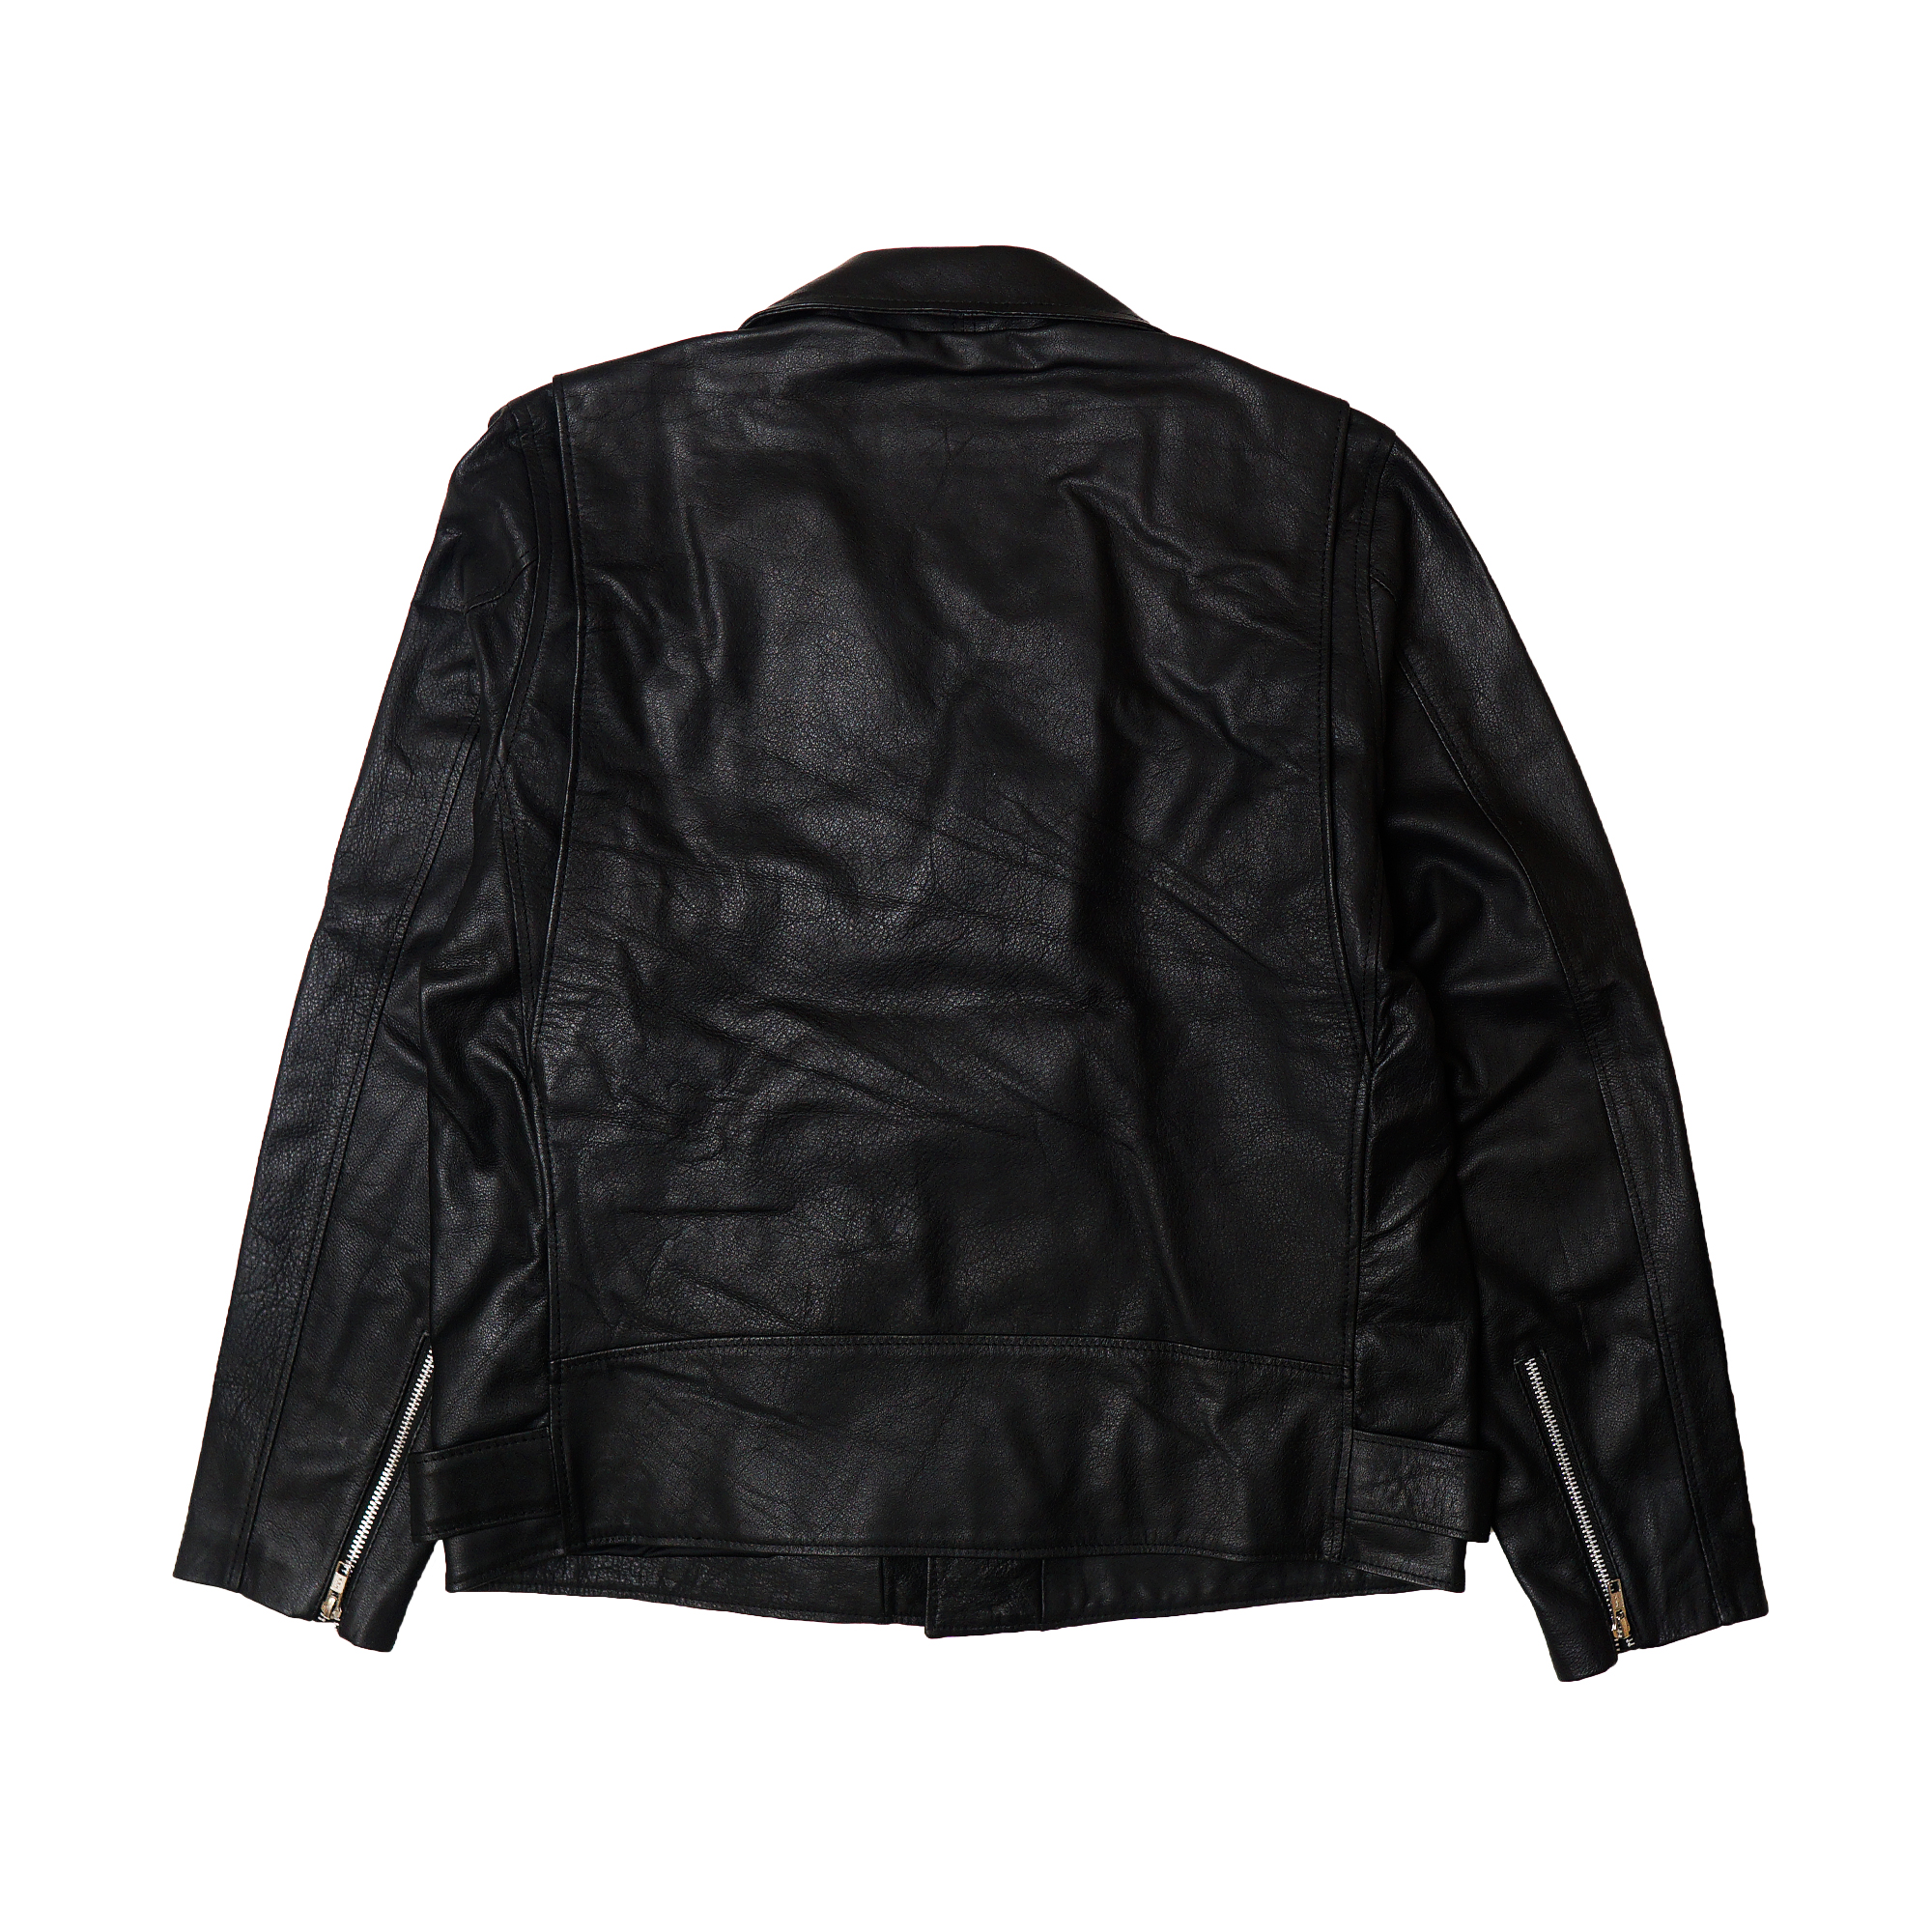 lawless_leather_jacket_belakang